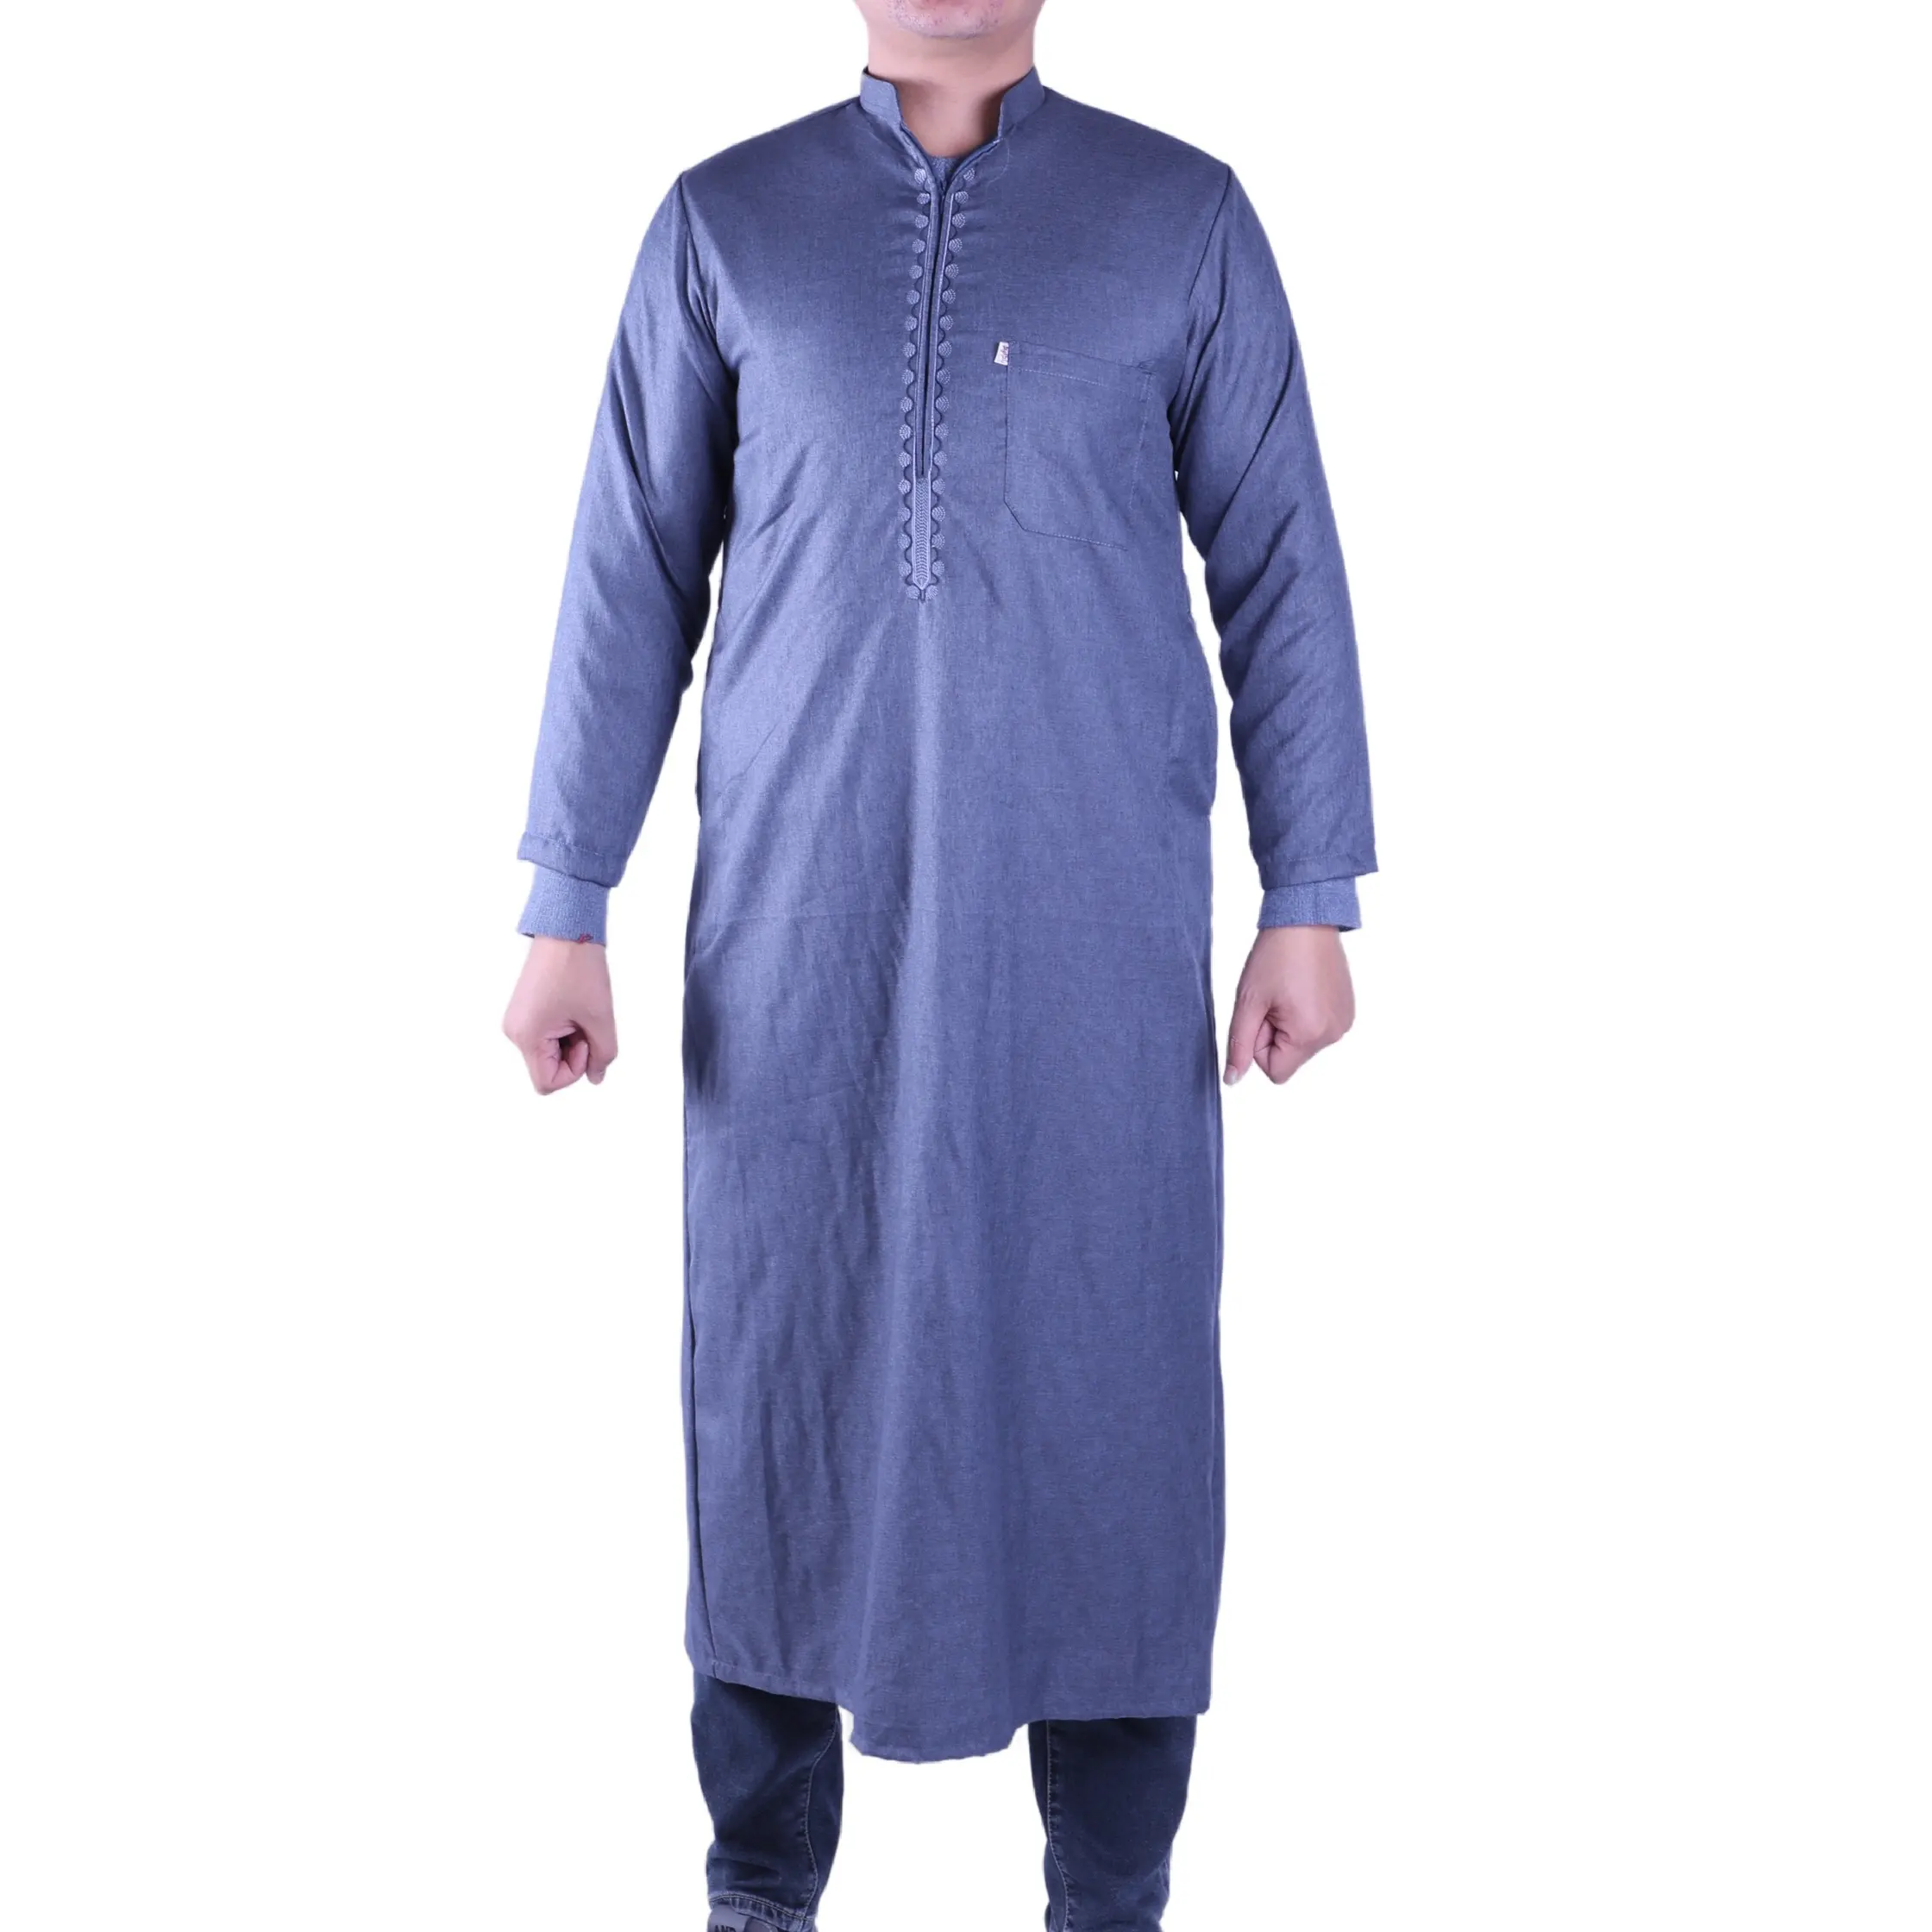 Vestido islâmico de manga curta com gola azul, vestido árabe de cor sólida para Eid, roupa muçulmana para o Eid, Malásia Abaya